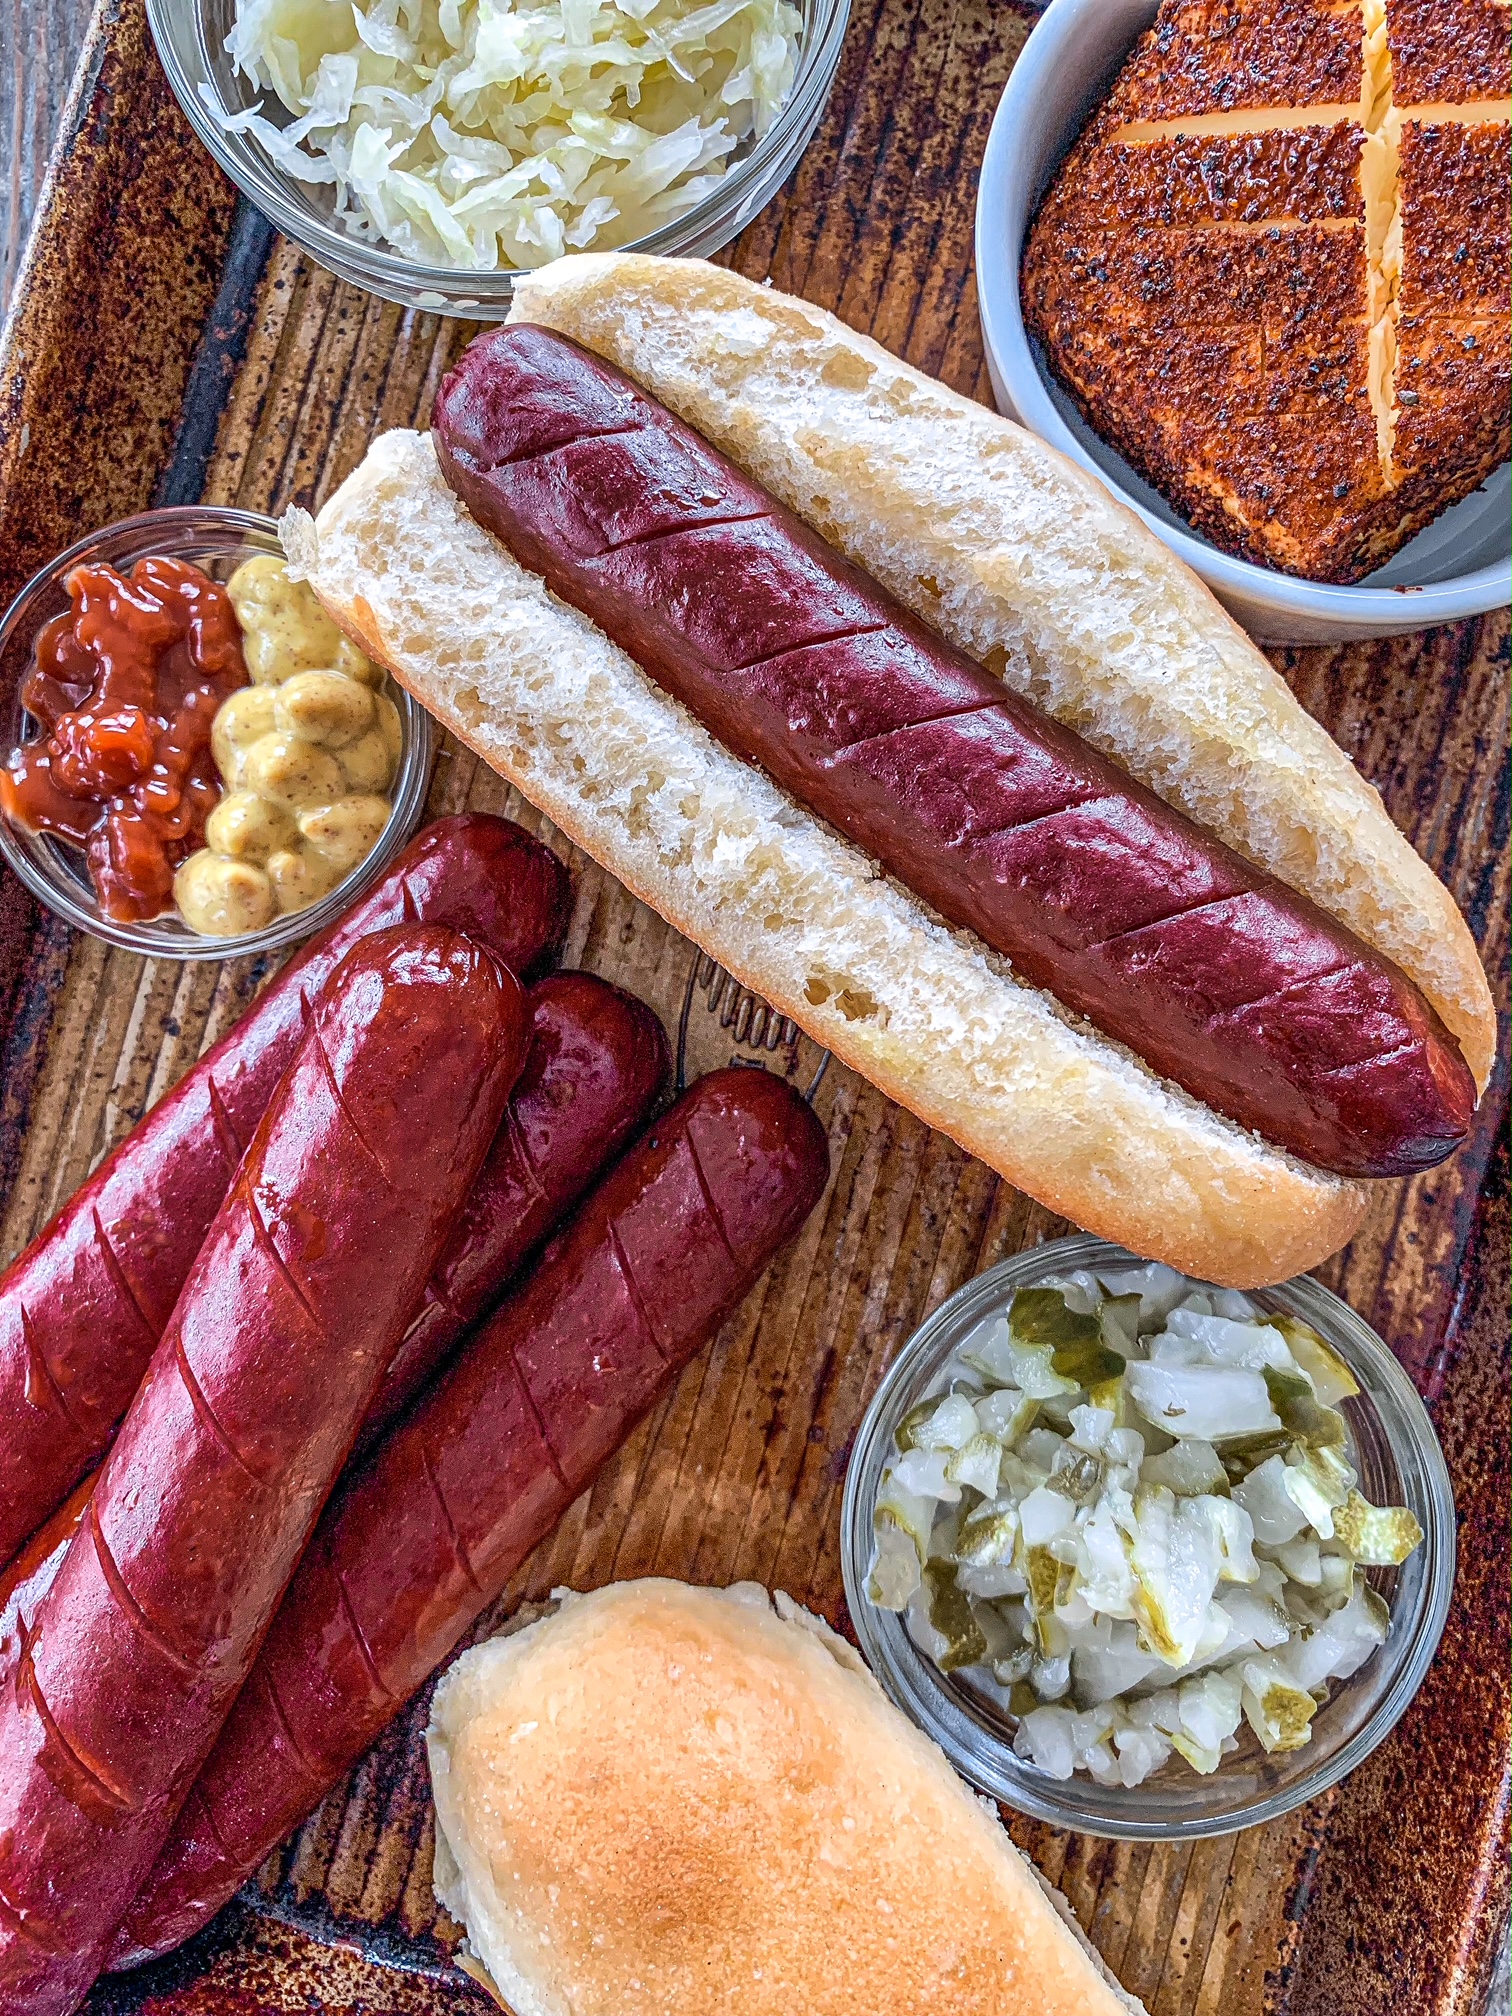 Hot dog on a sheet pan with bowls of smoked cream cheese, relish, ketchup and mustard.